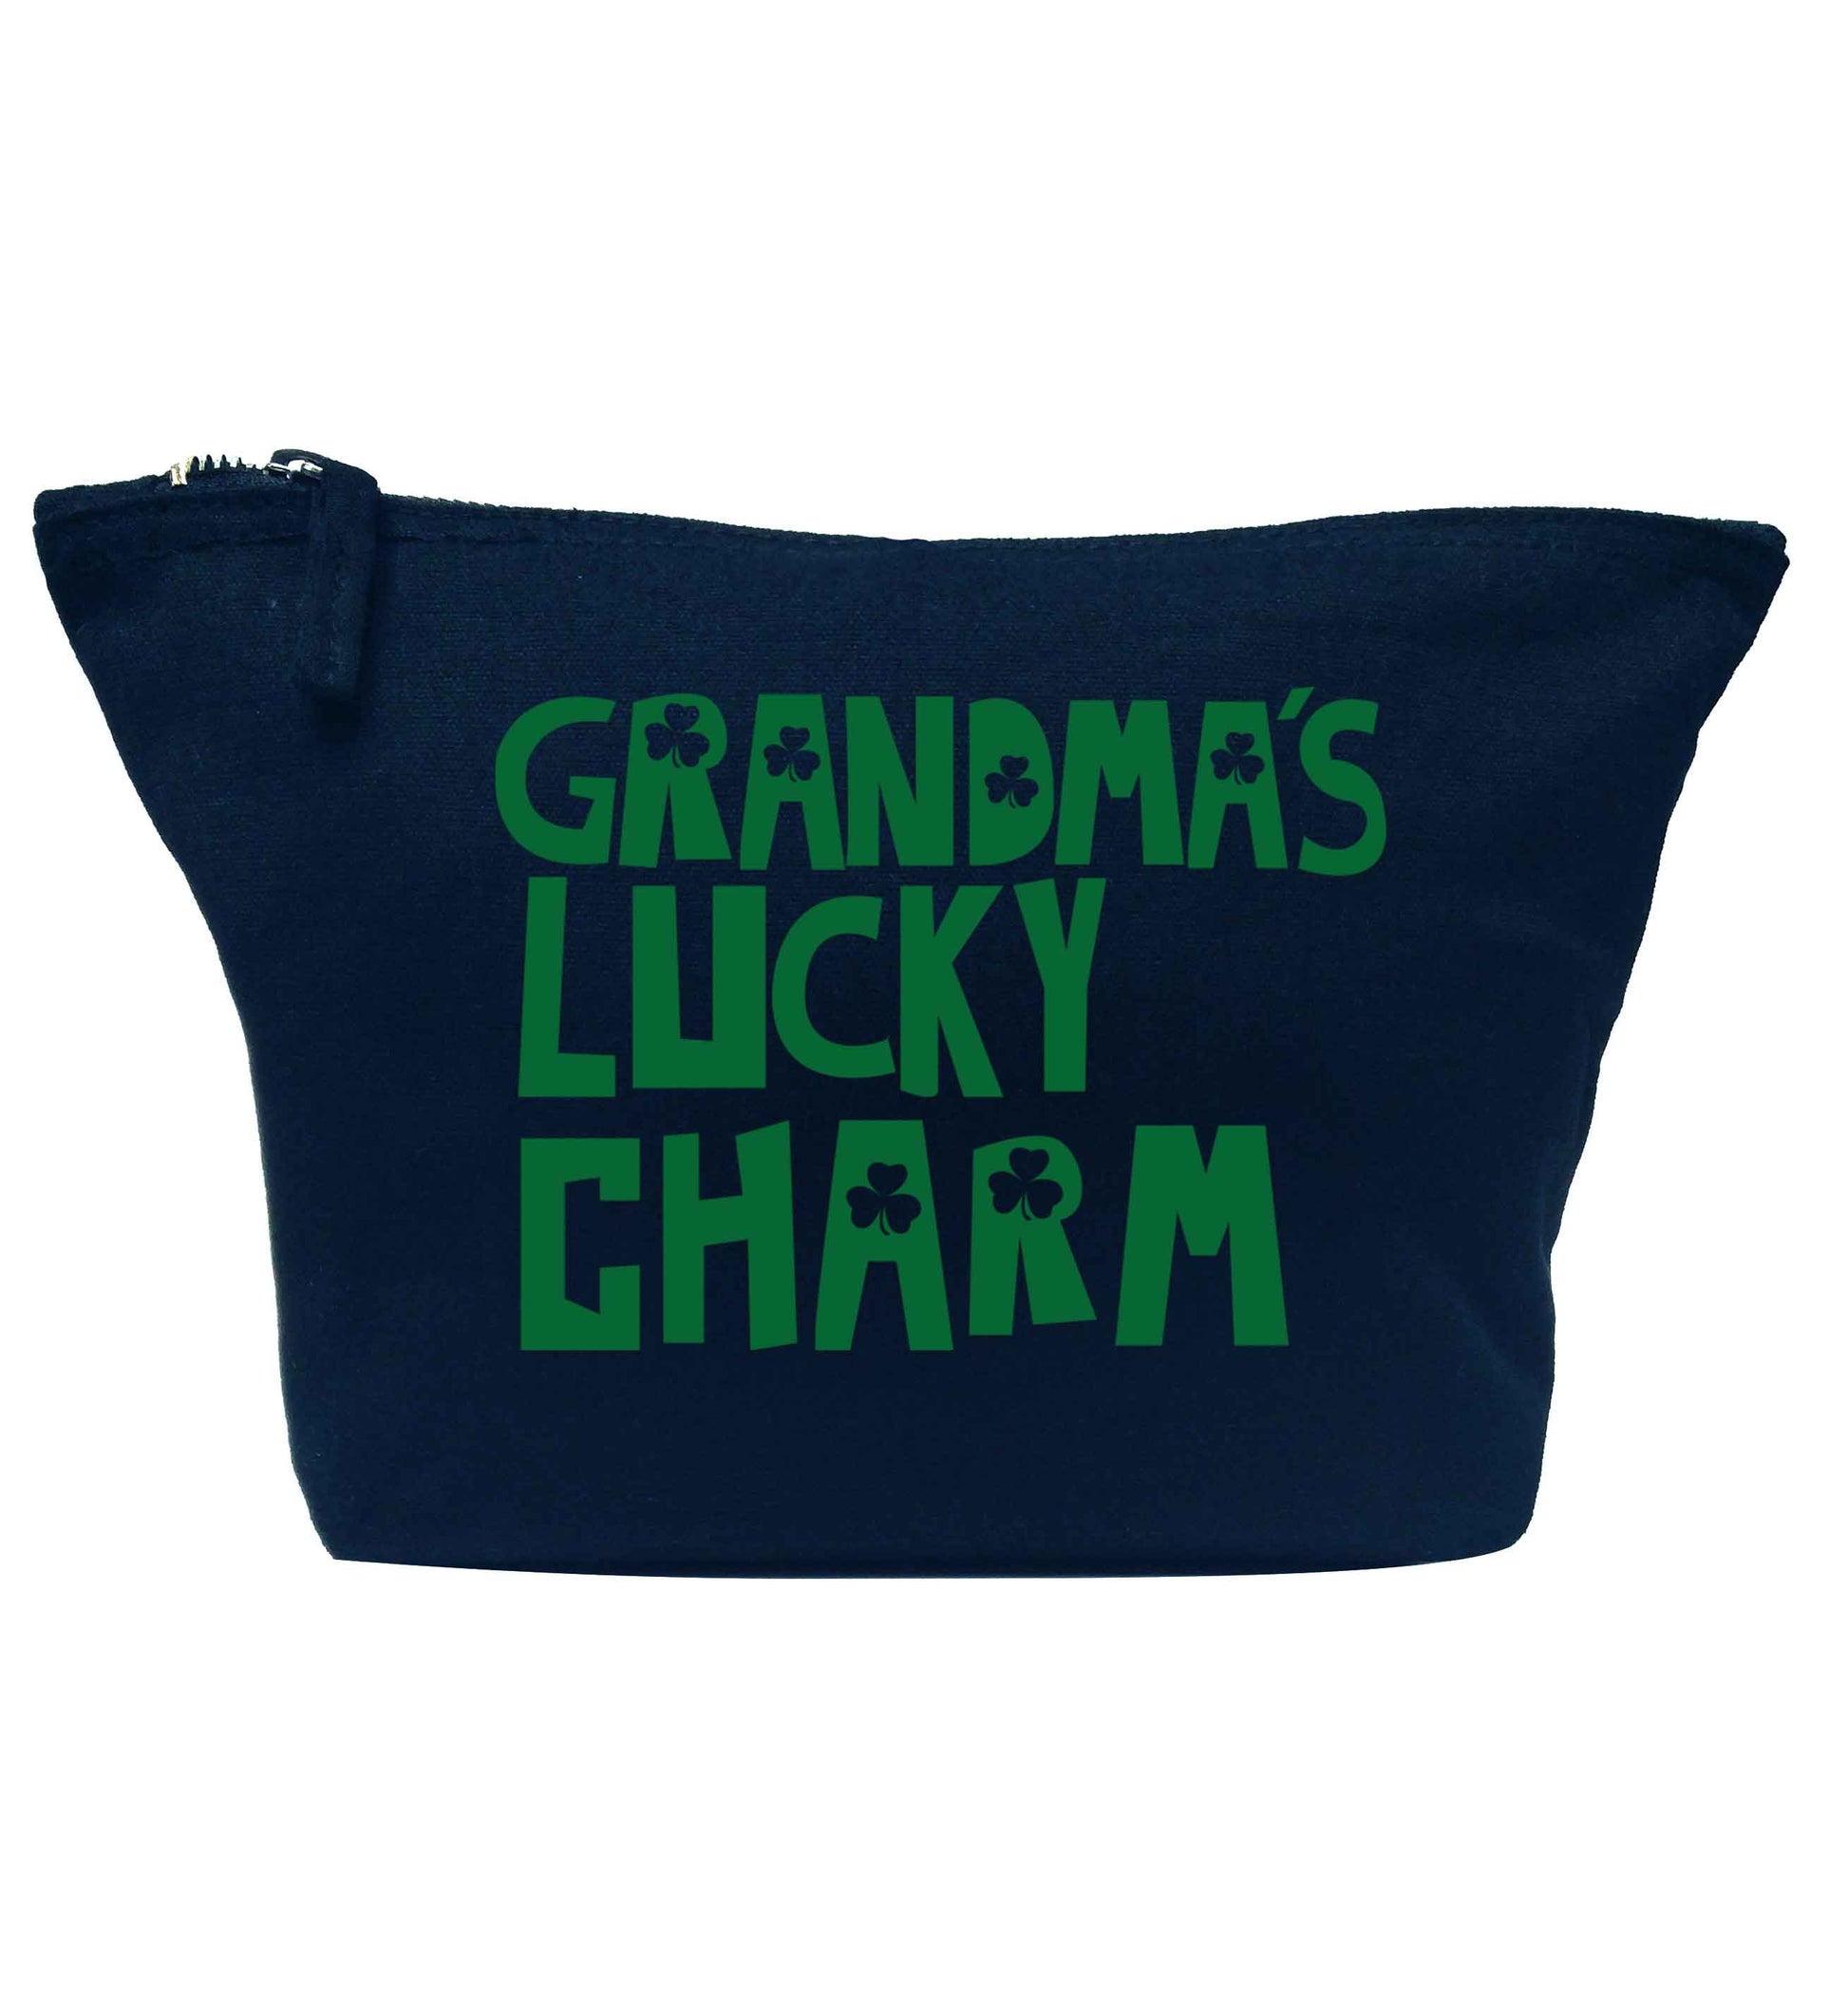 Grandma's lucky charm navy makeup bag